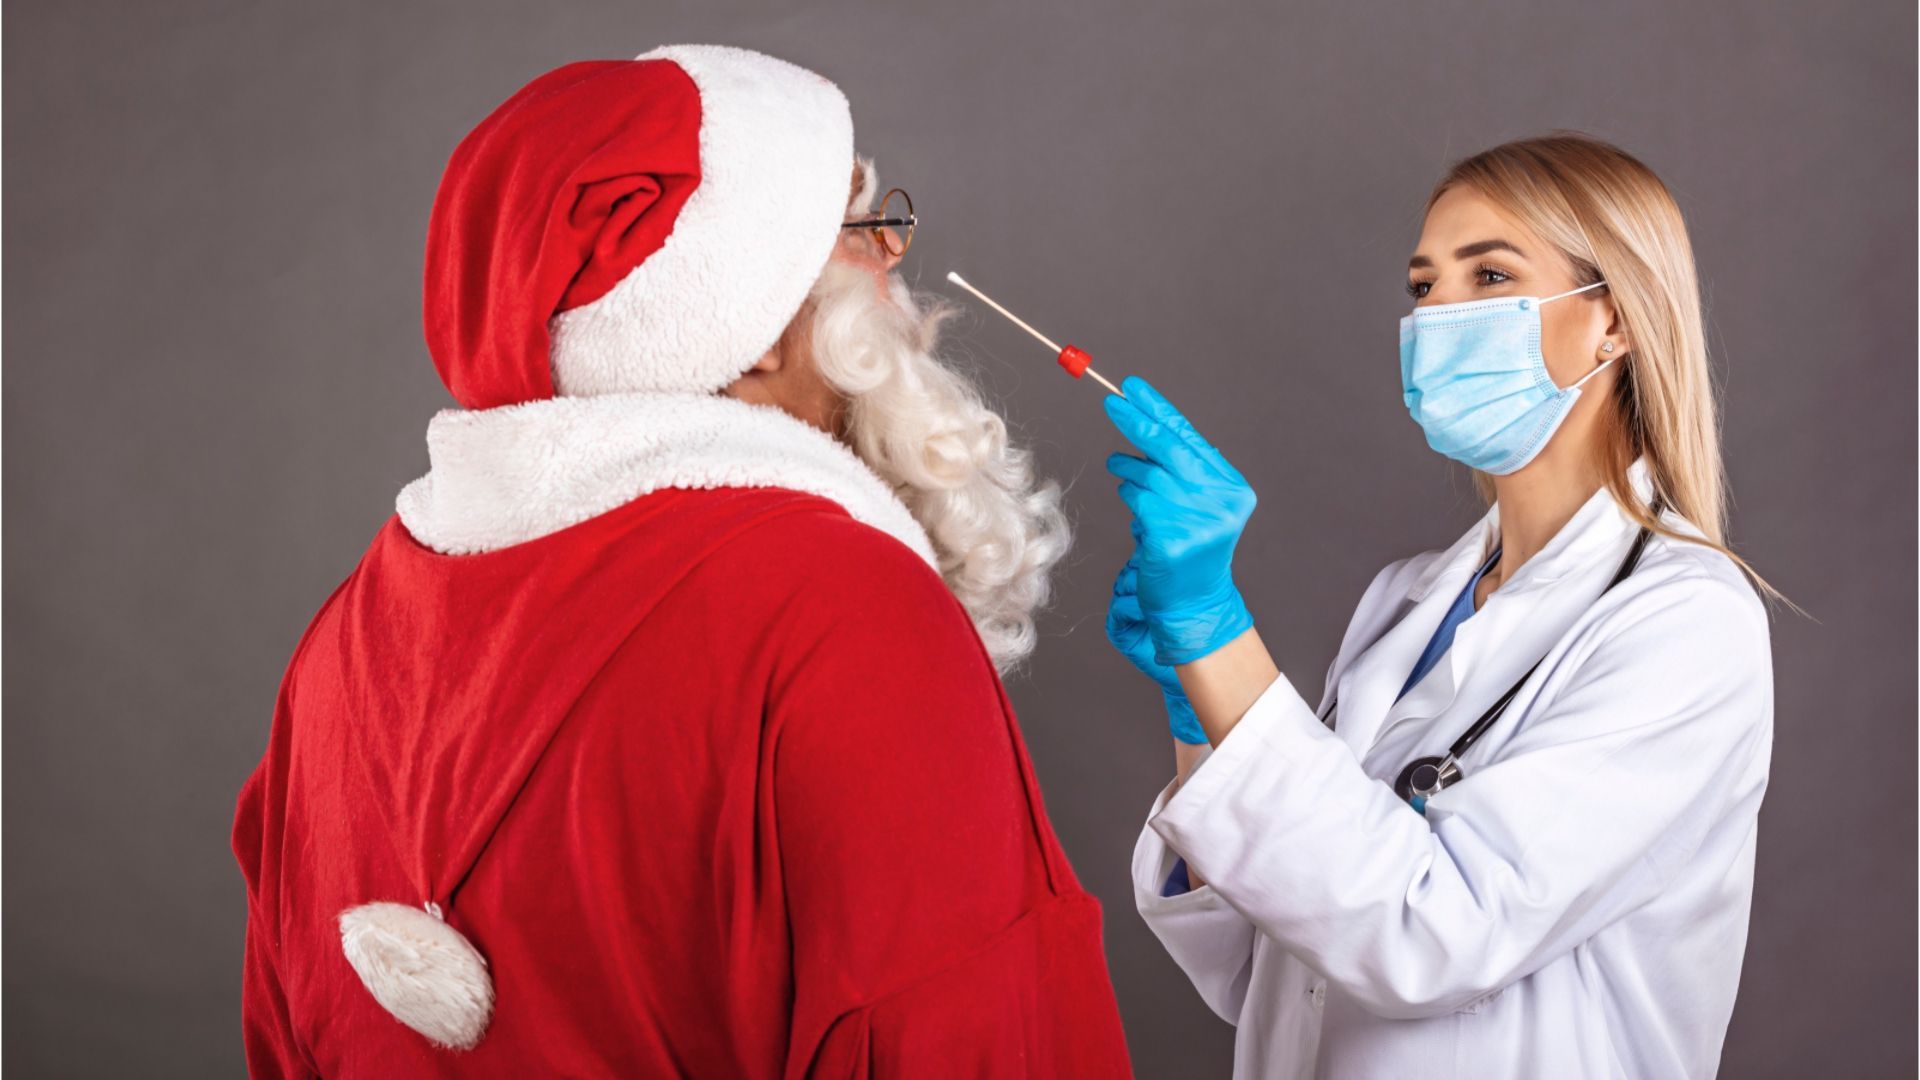 Regelung für Feiertage: Bayern lockert Corona-Testpflicht in Heimen und Krankenhäusern in der Weihnachtszeit